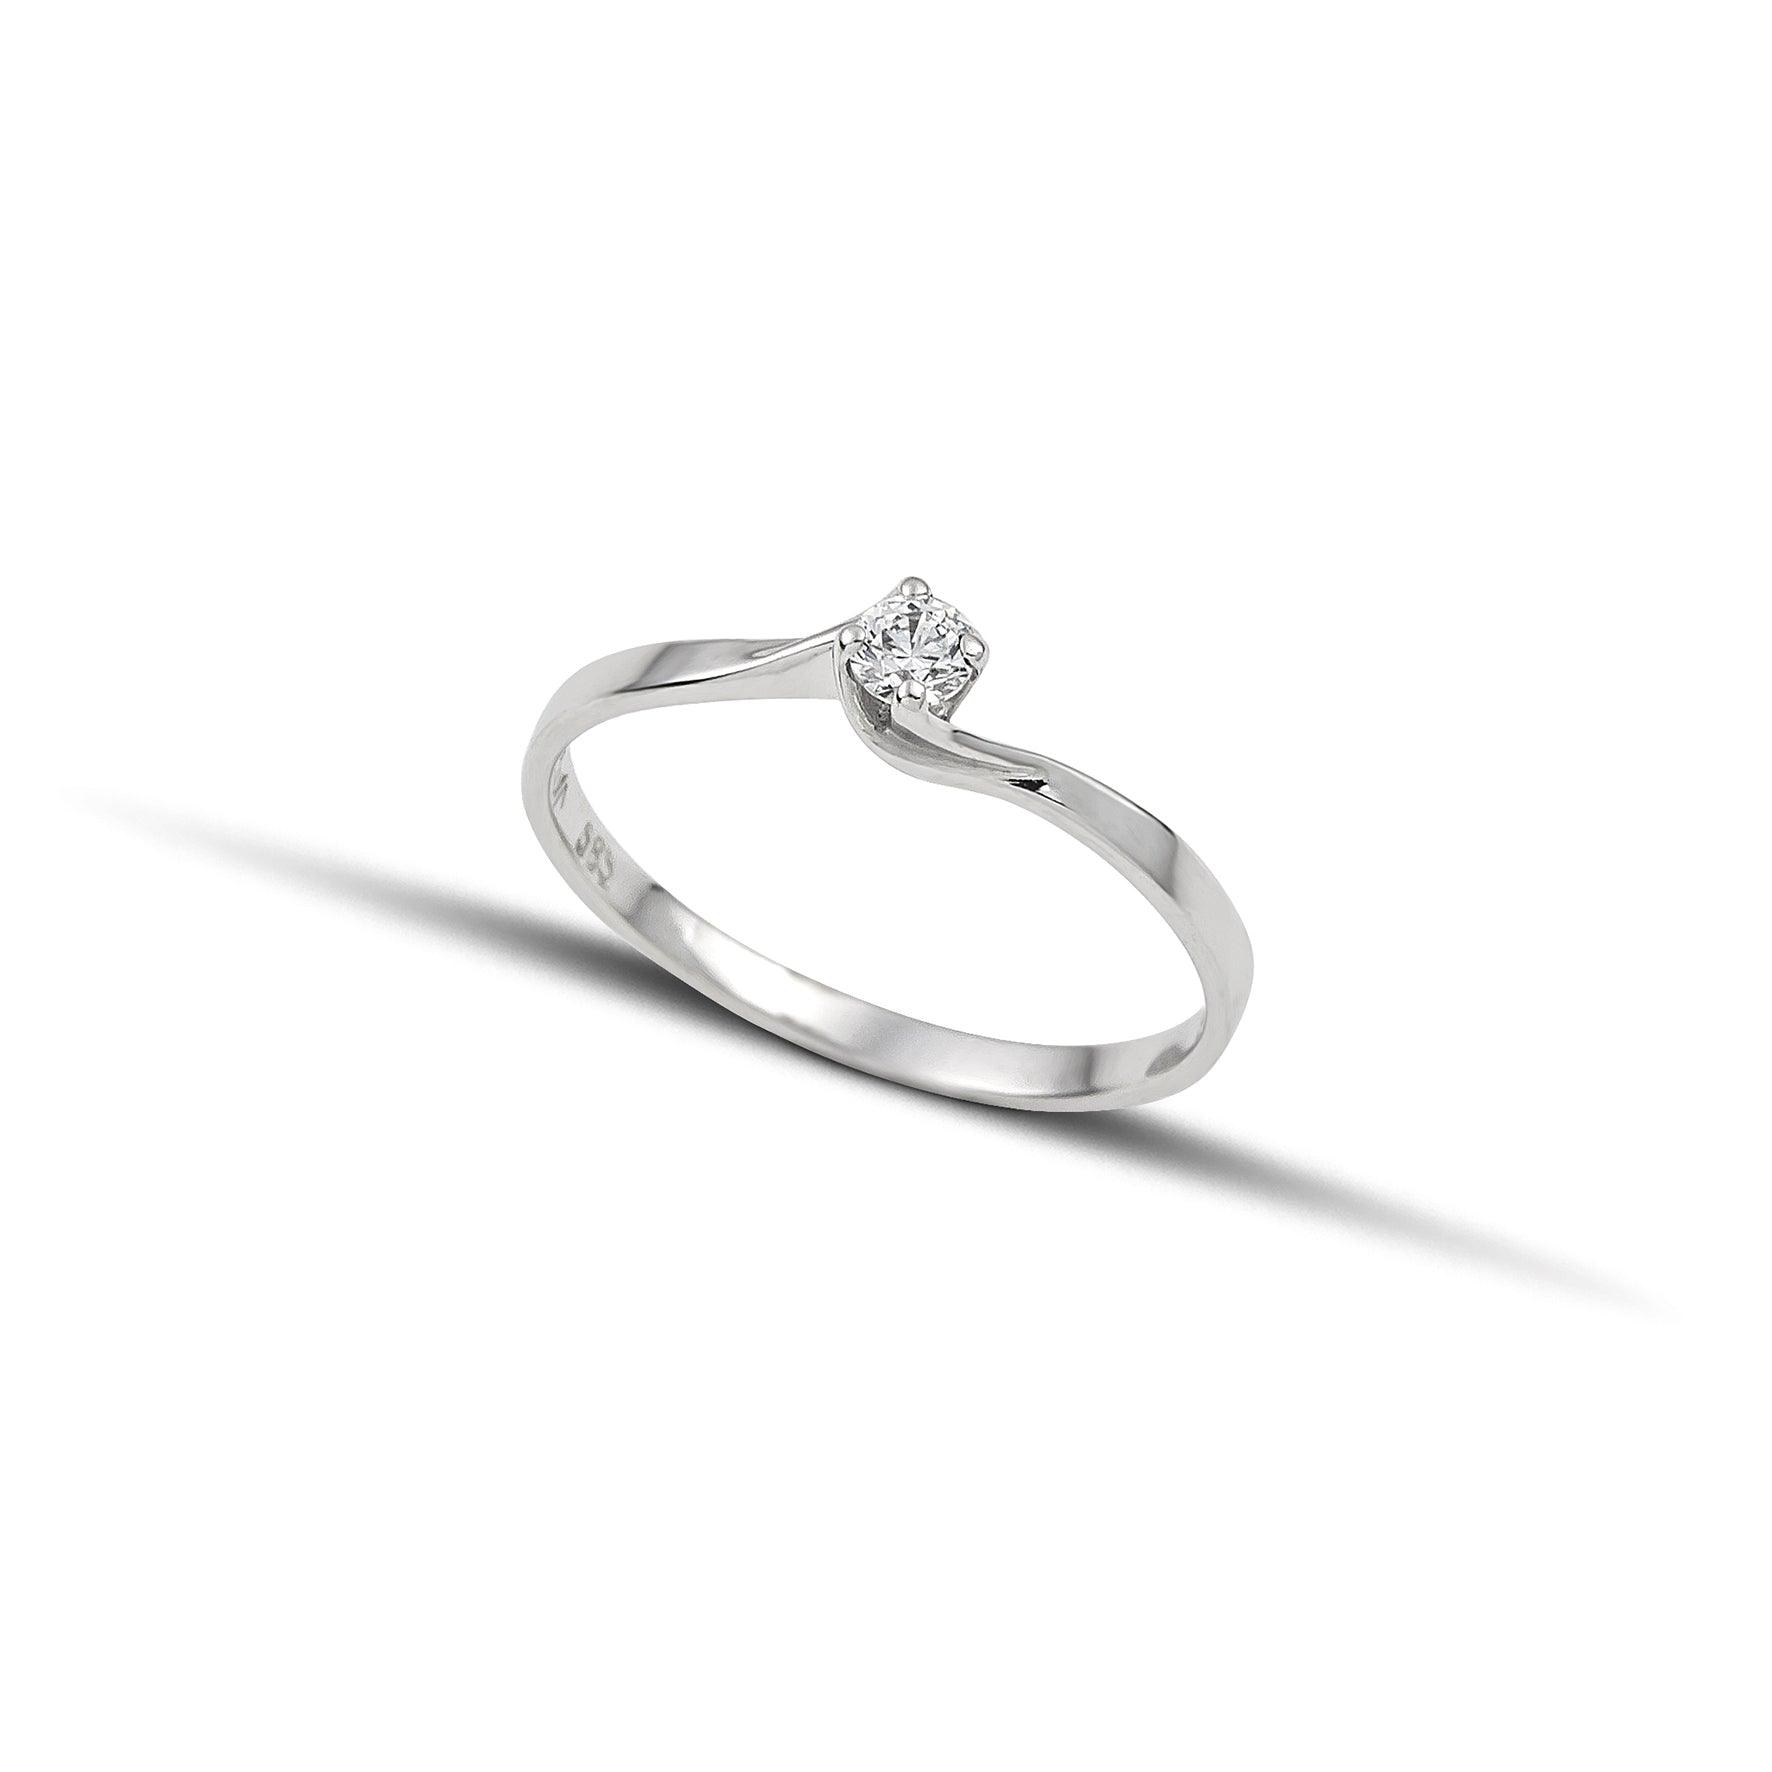 Λευκόχρυσο μονόπετρο δαχτυλίδι με διαμάντι και καστόνι που αγκαλιάζει την πέτρα σε σχήμα φλόγας